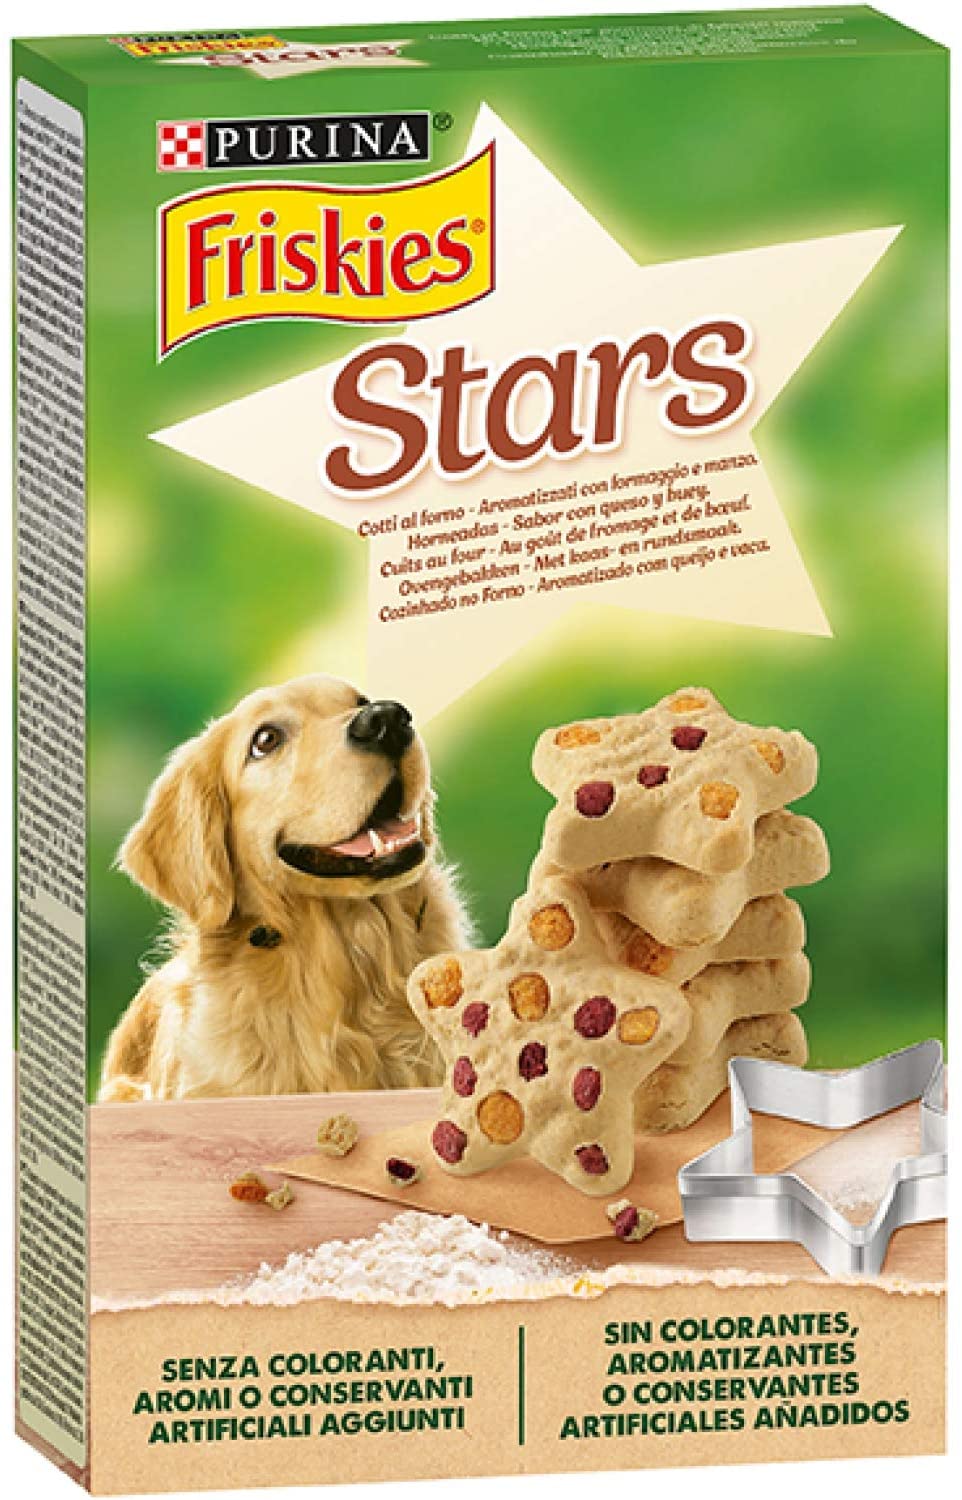  Purina Friskies Stars Galletas de perro con queso y ternera, 320 gr 